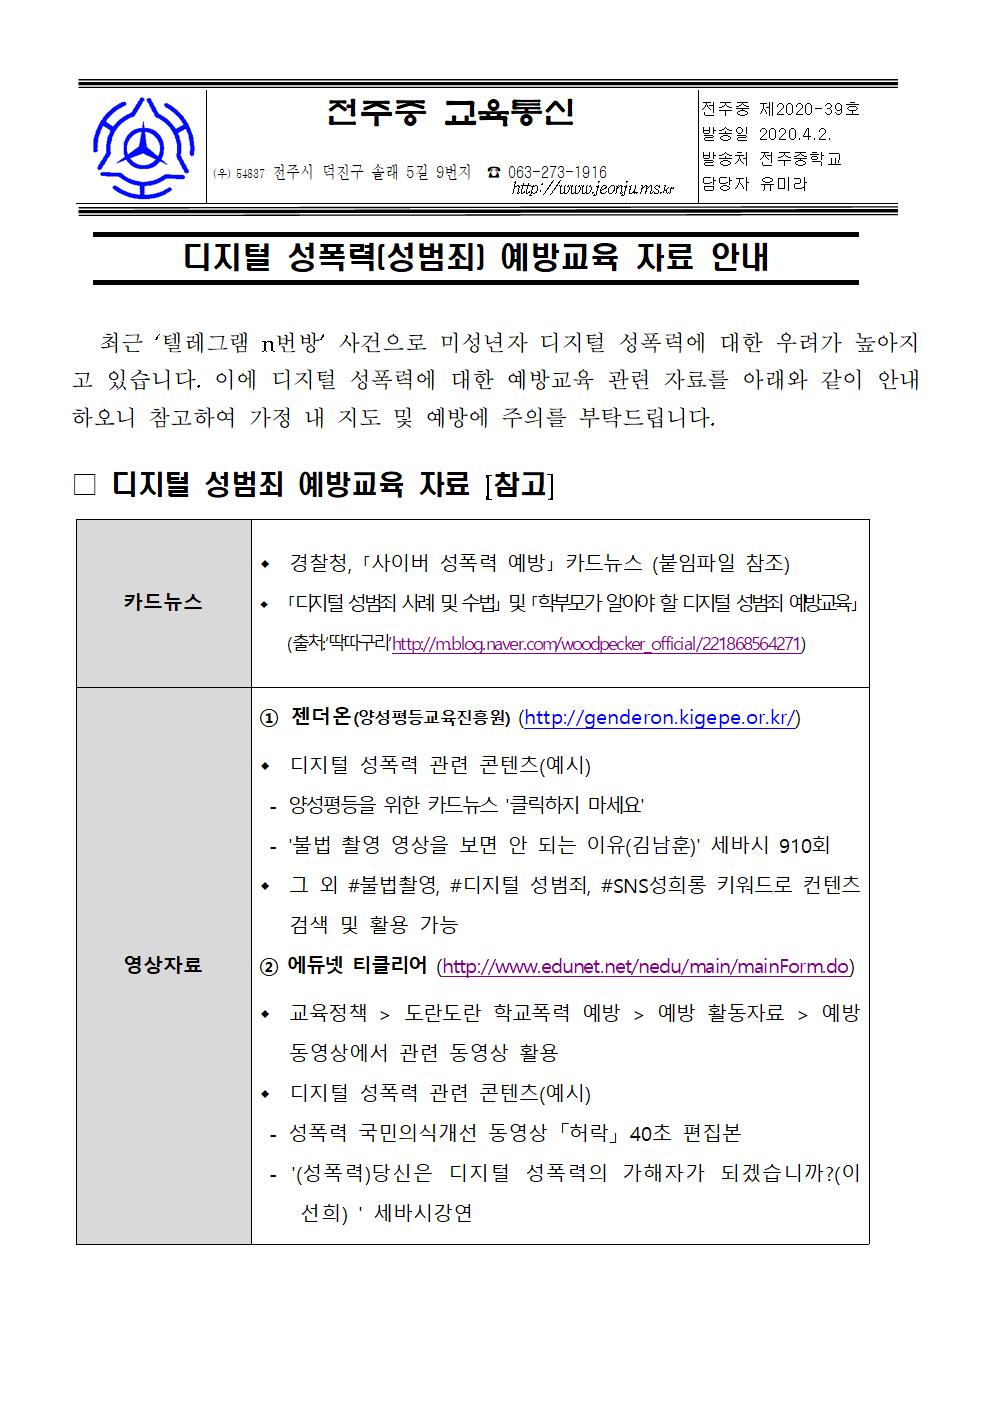 디지털 성범죄 예방 가정통신문001